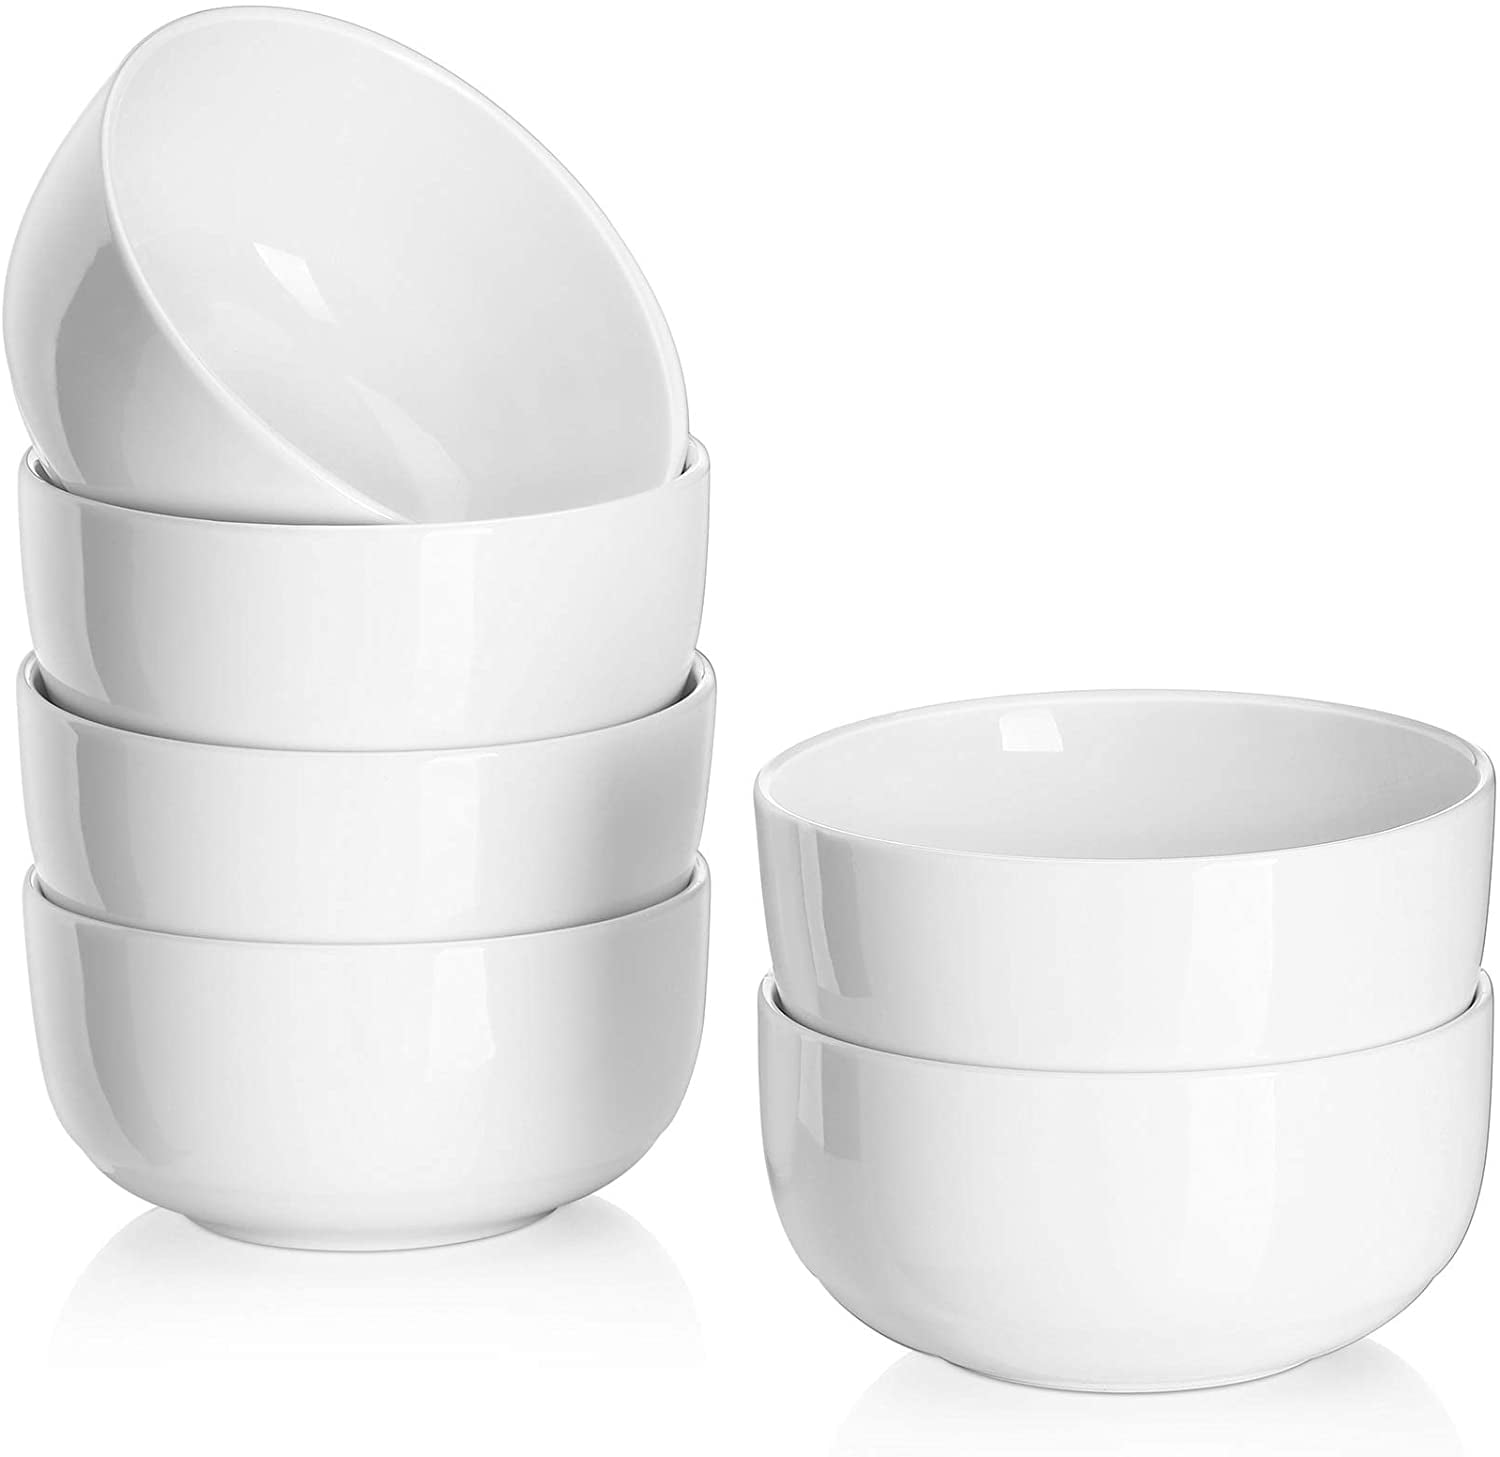 Natural White Teocera 22 Oz Porcelain Cereal Bowls Set Microwave Safe 6 inch Soup/Noodle Bowl 4 packs 